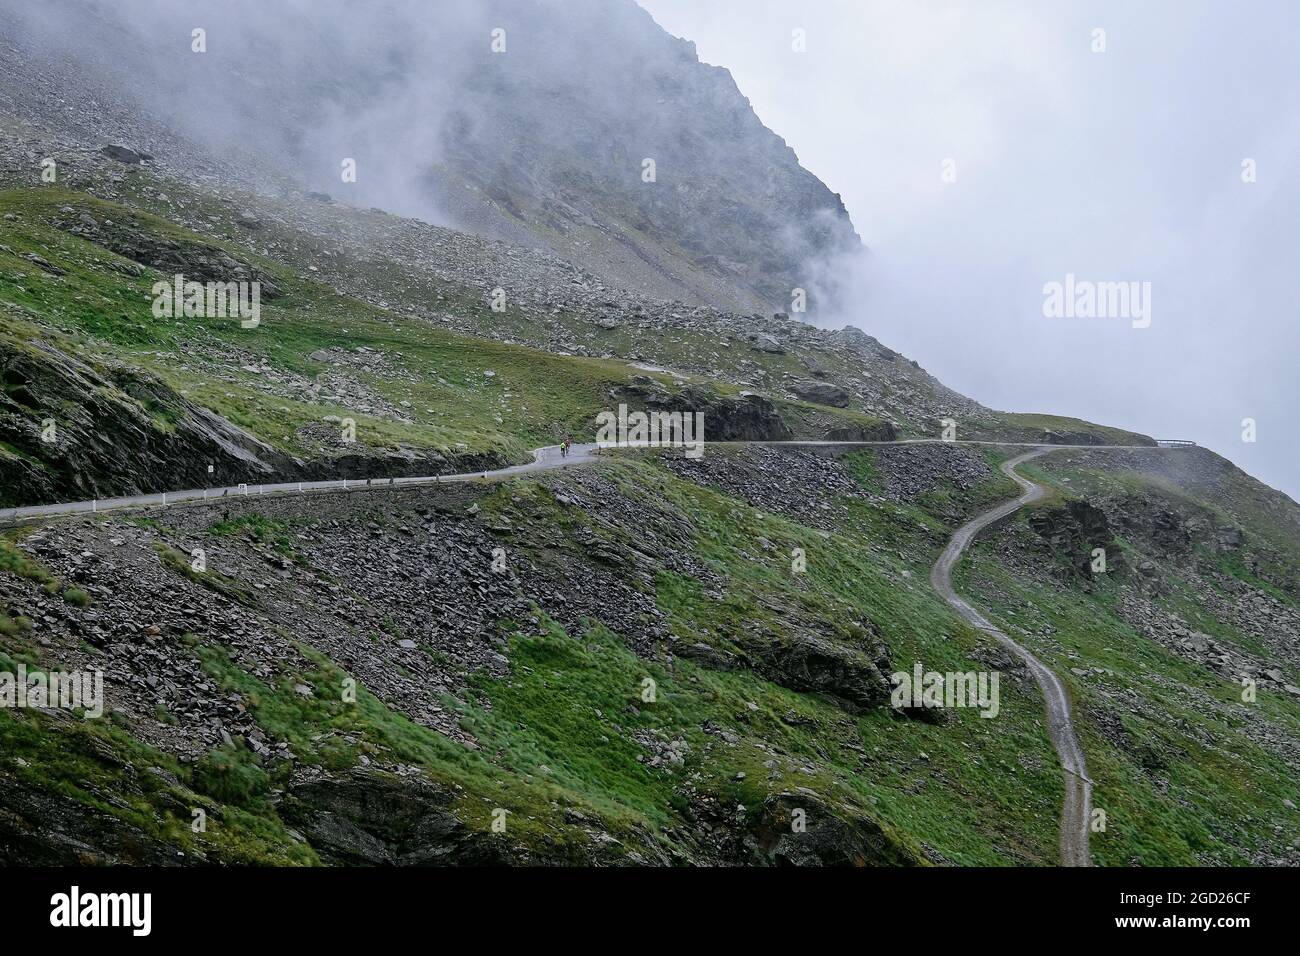 Passo di montagna Gaviapass, Passo di Gavia, nelle Alpi italiane. Passo di Gavia collega le province di Sondrio e Brescia. Foto Stock